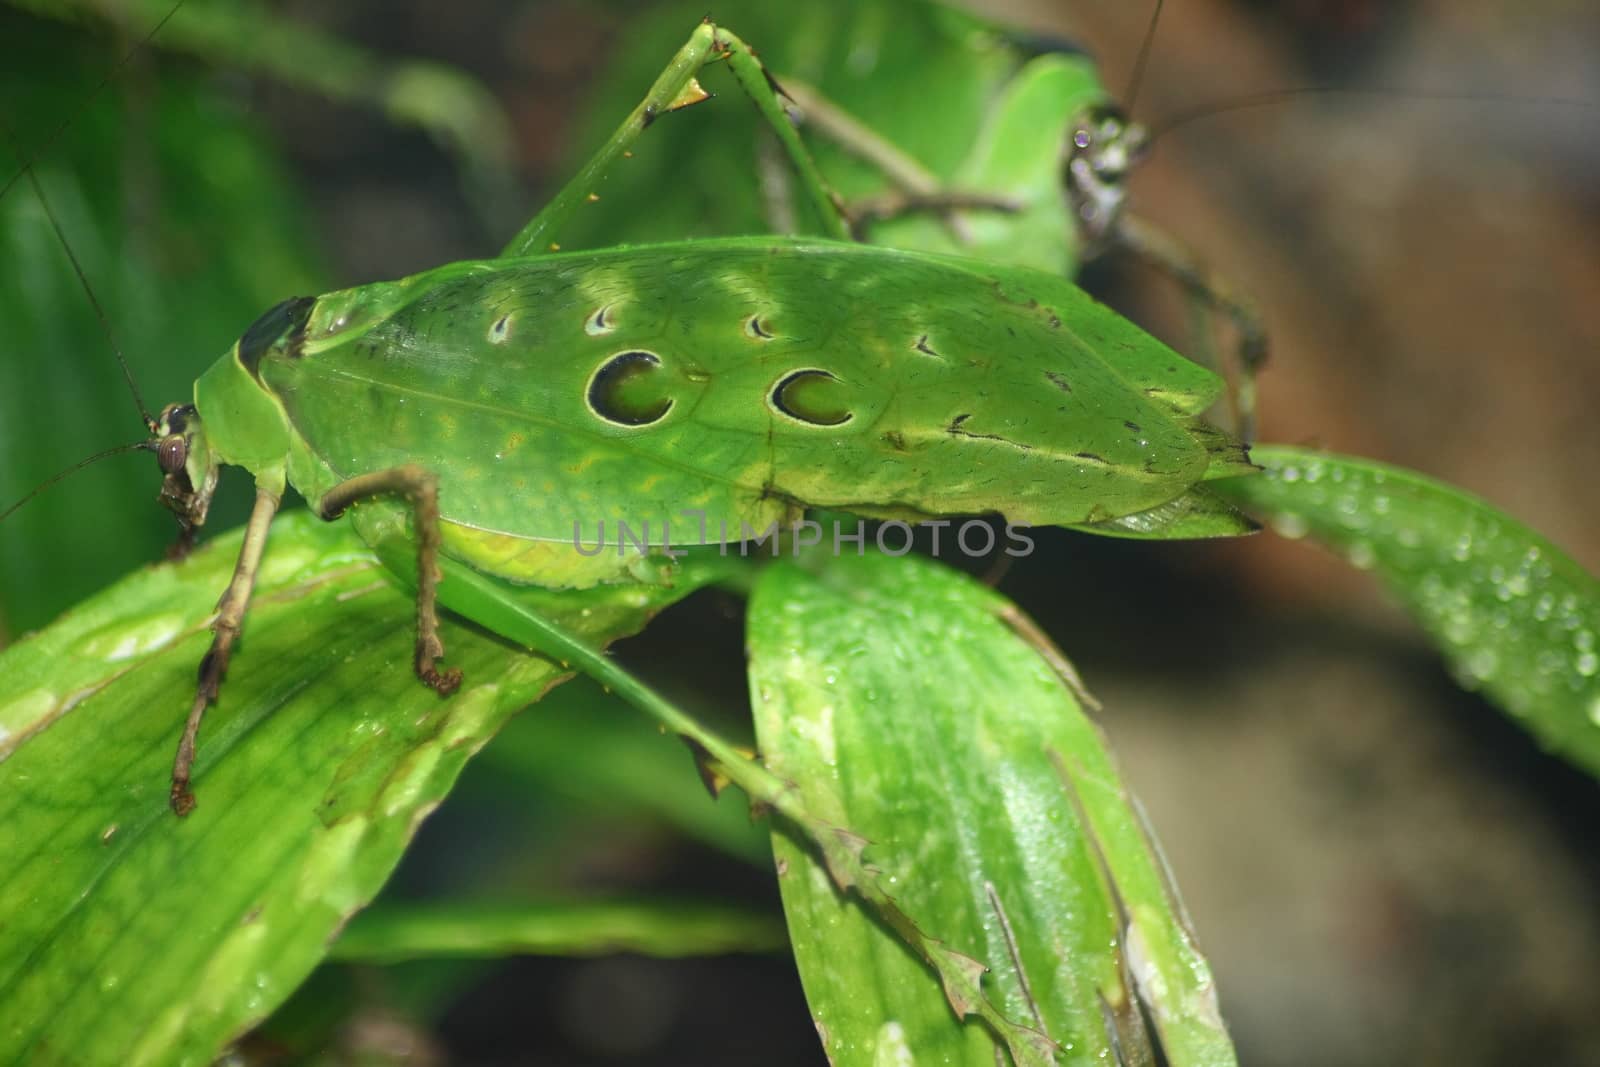 A green grasshopper sitting on a leaf